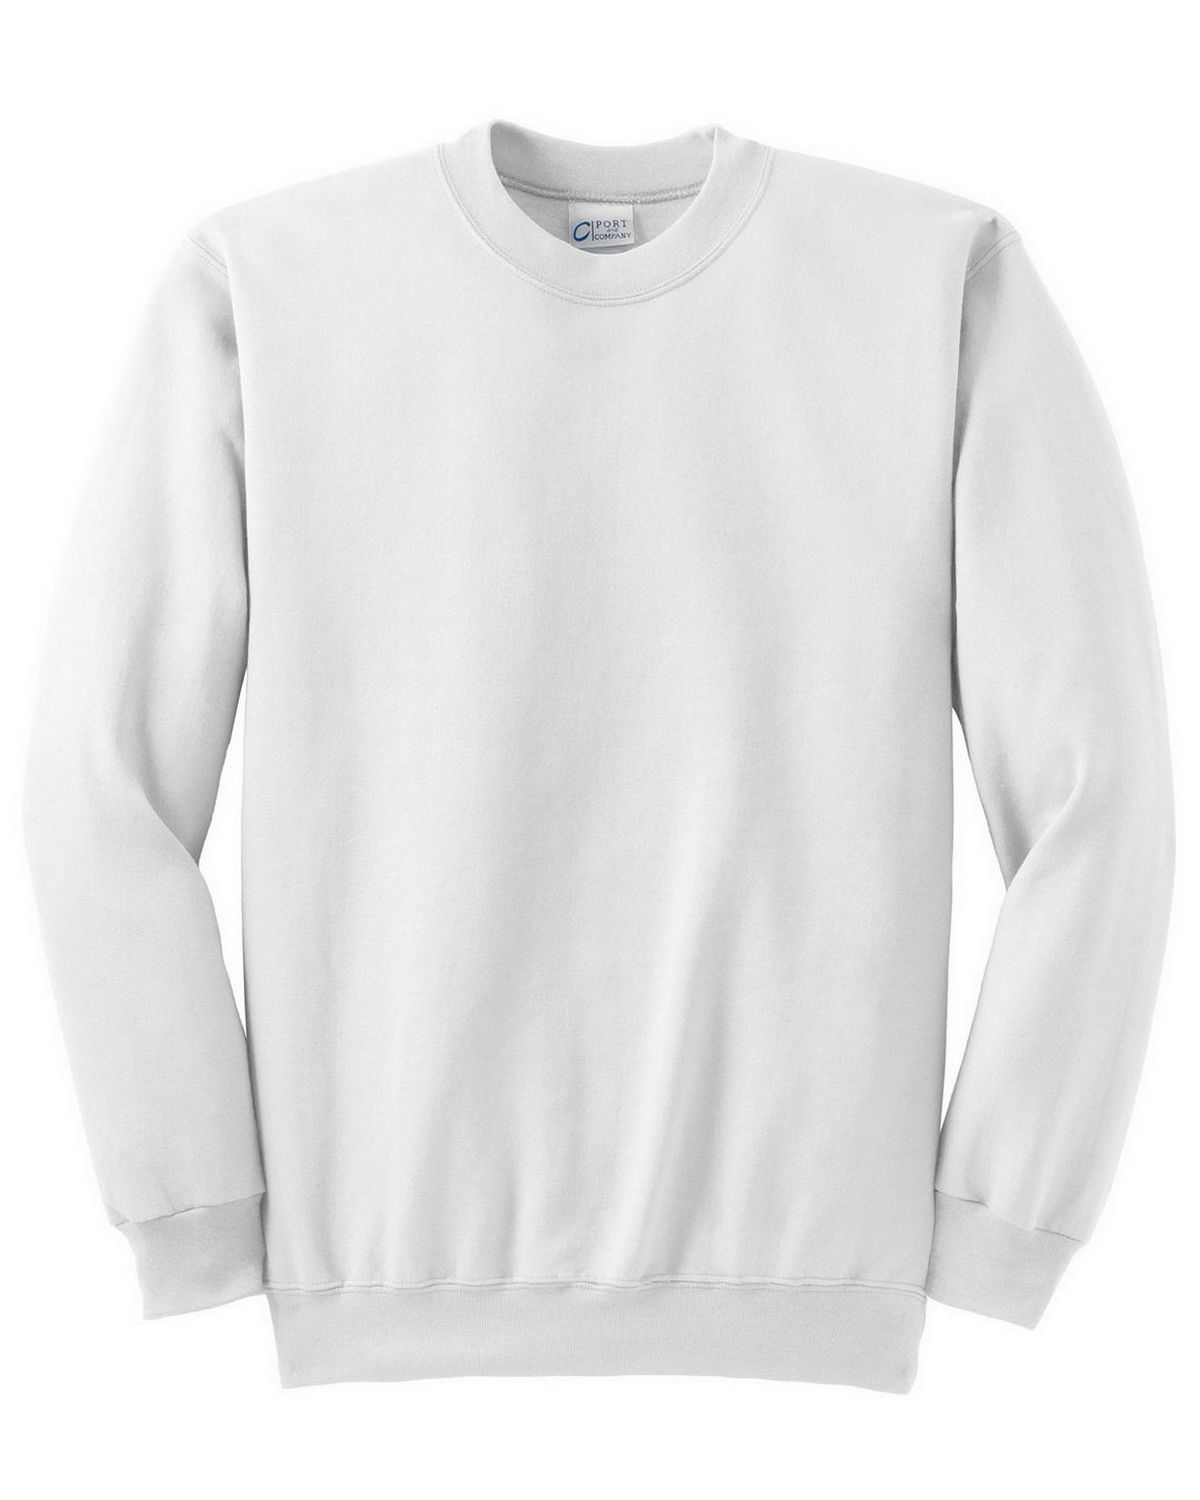 Download Port & Company PC90 Crewneck Sweatshirt - Shop at ...